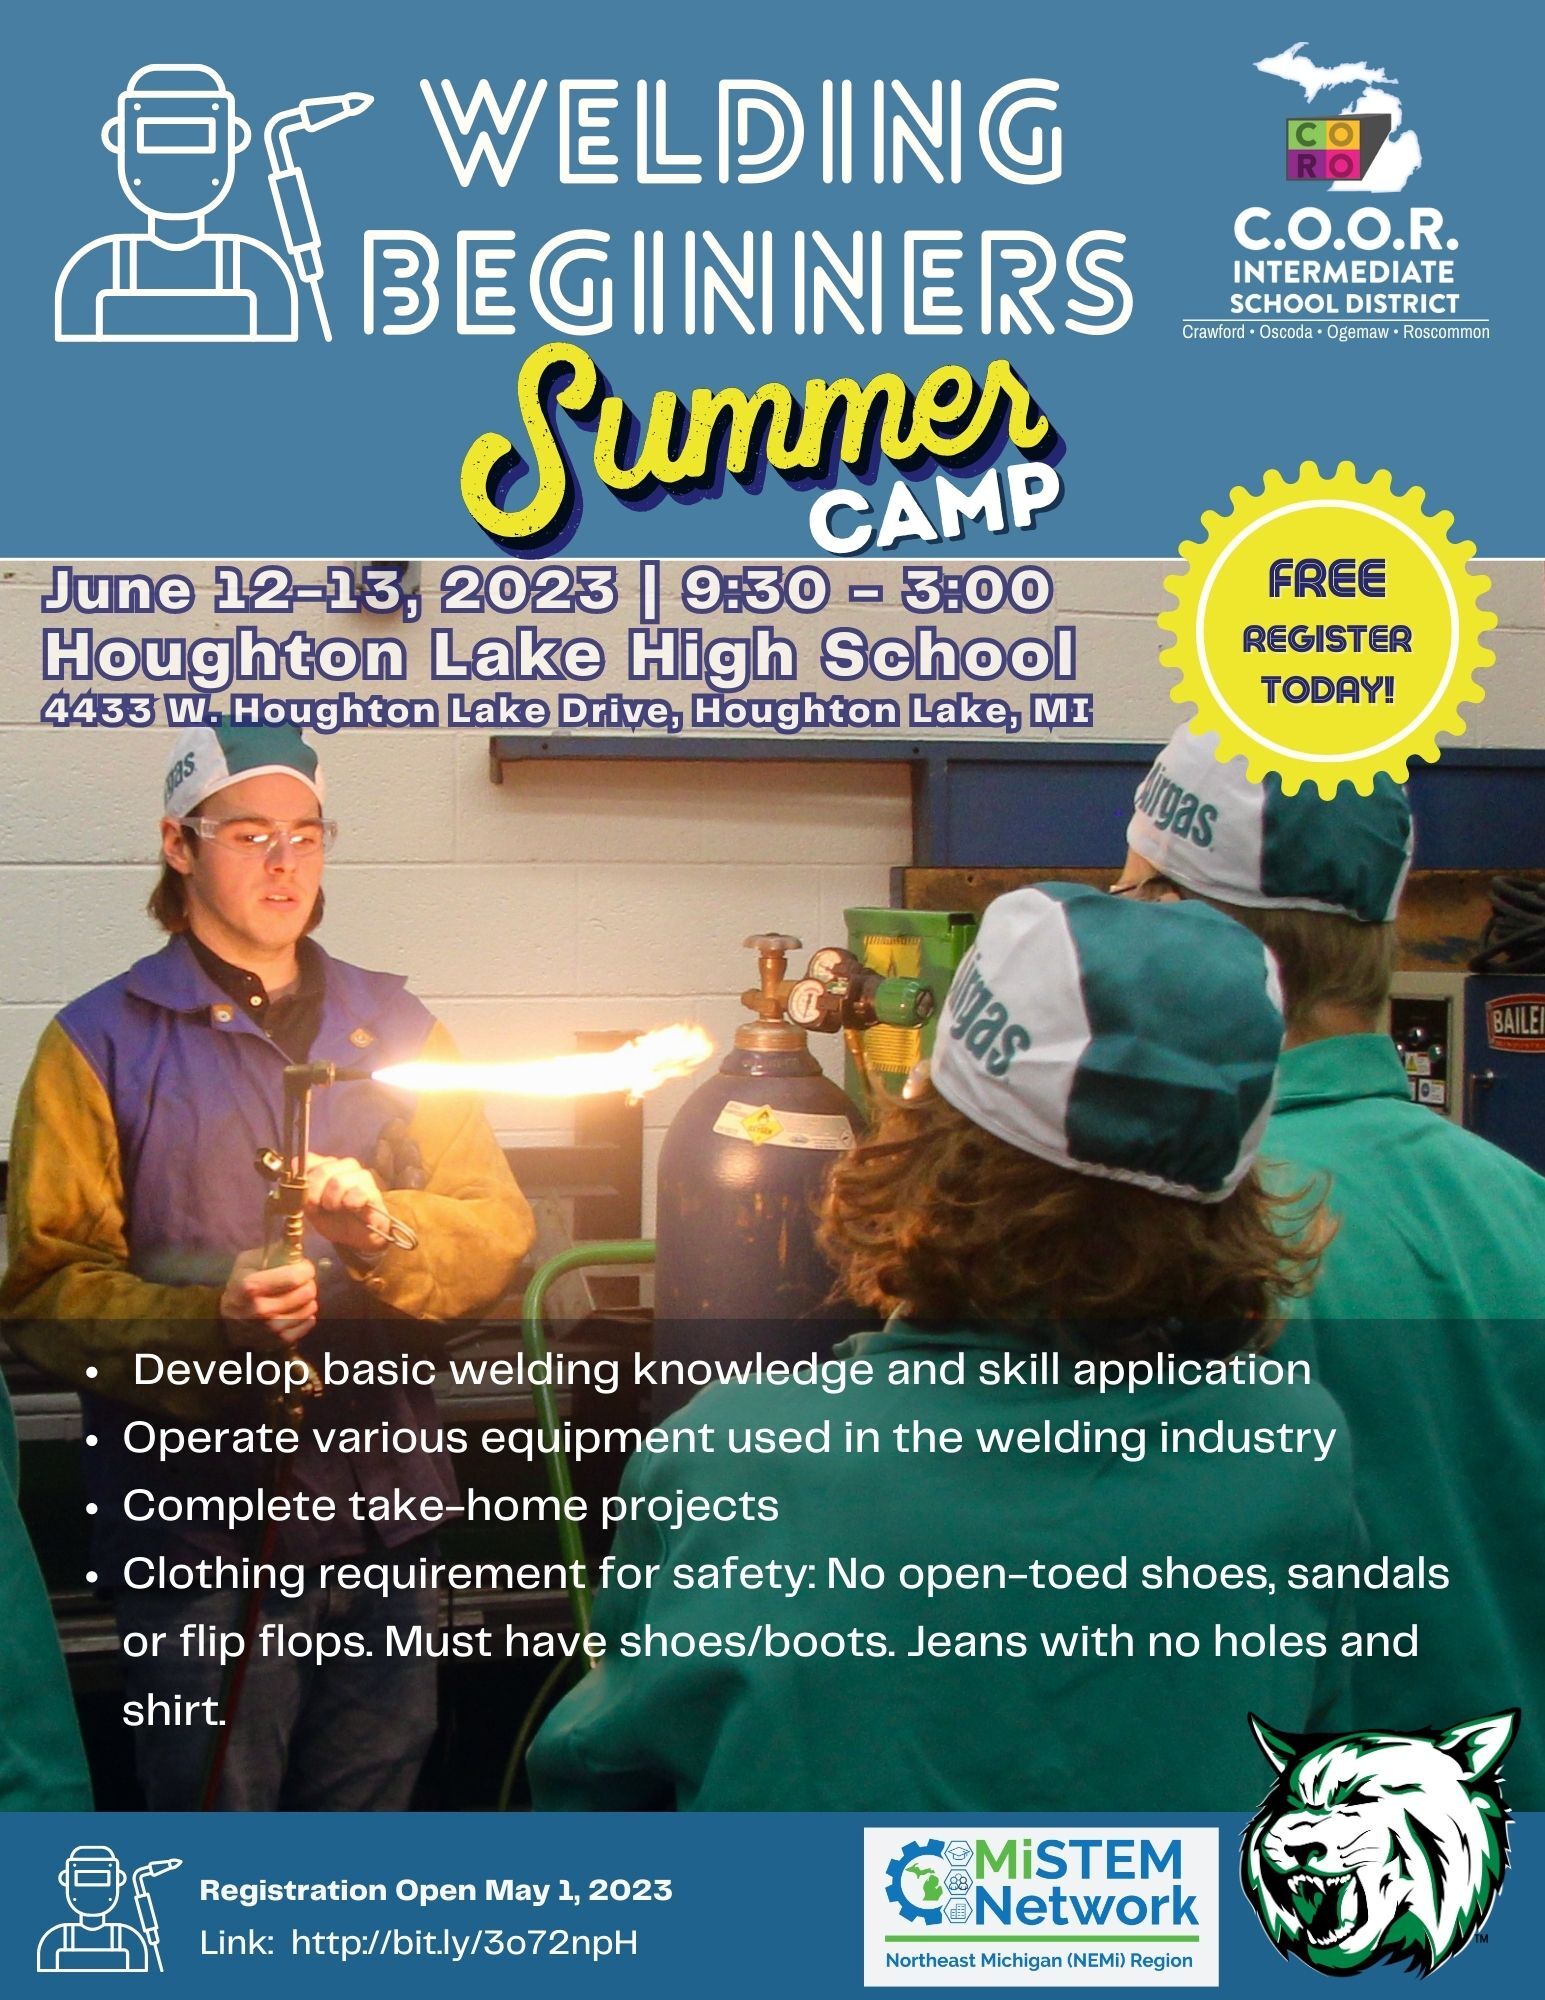 Summer Camp: Welding Beginning